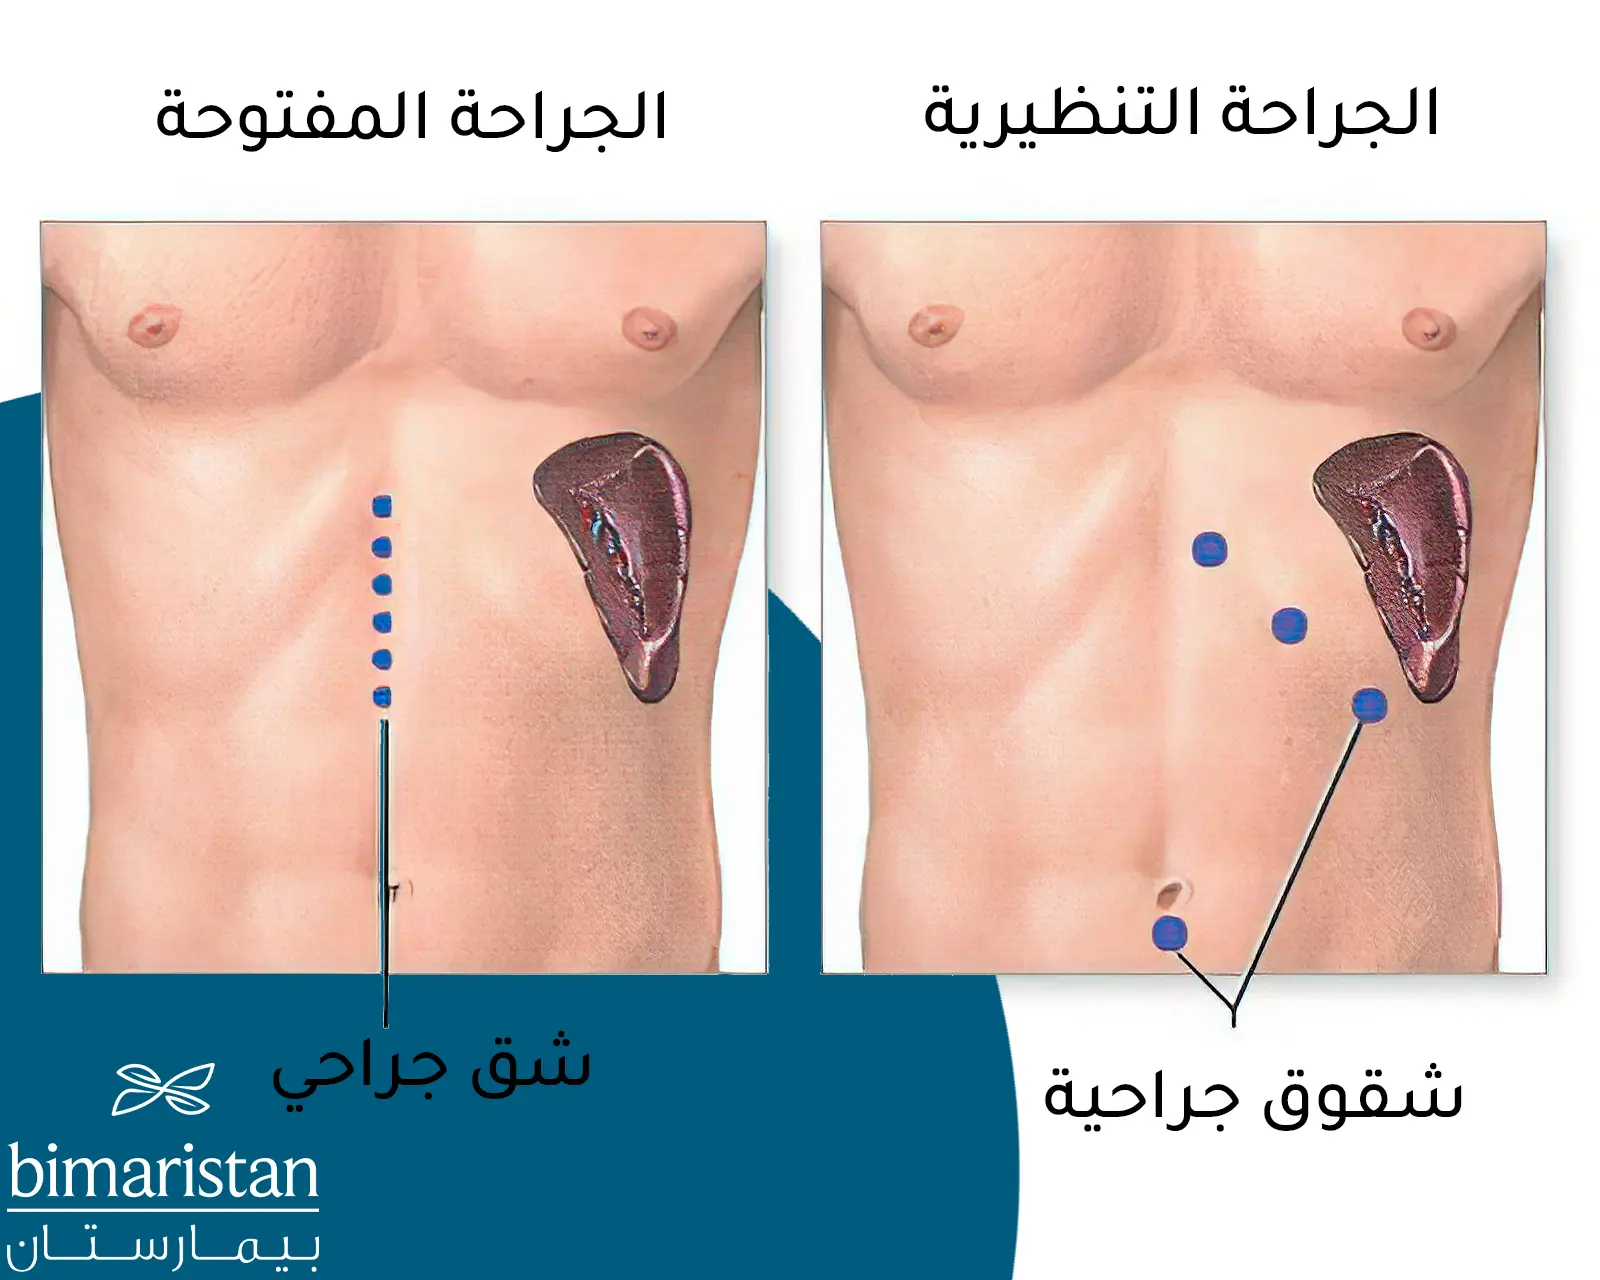 صورة توضيحية تبين الفرق بين الجراحة المفتوحة والجراحة التنظيرية في عملية استئصال الطحال